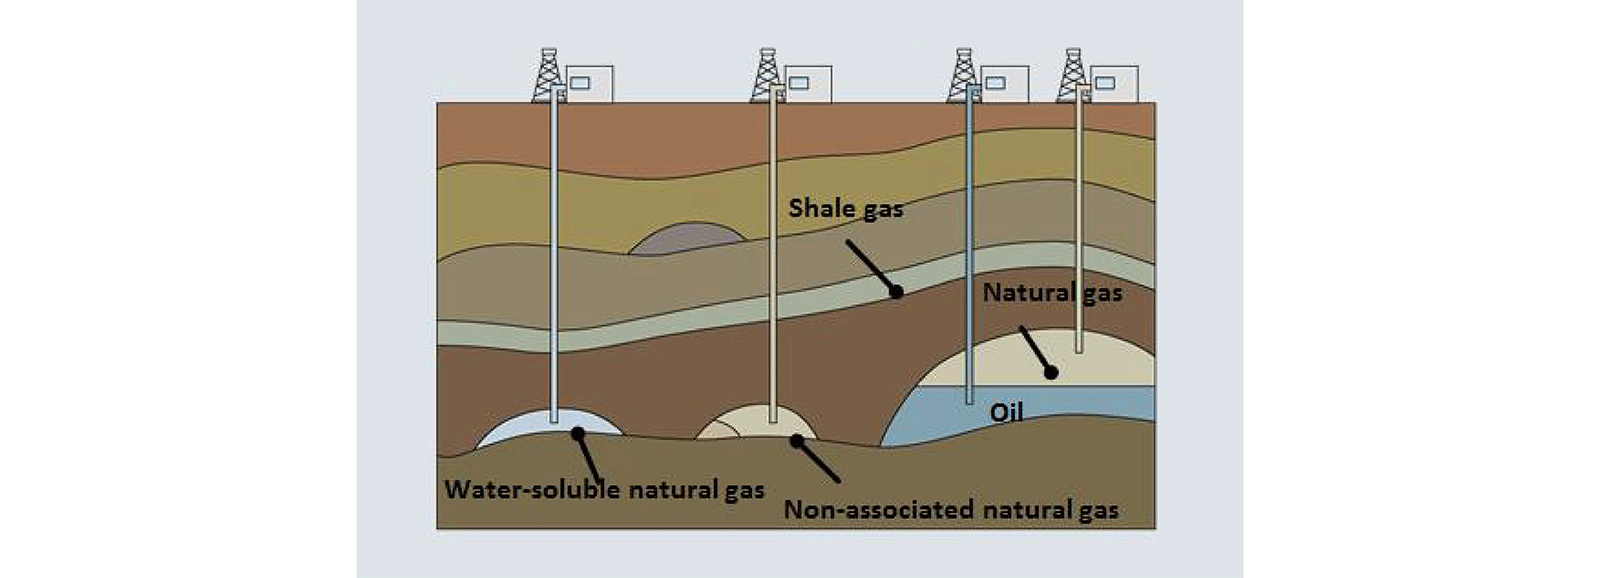 Добыча традиционного природного газа